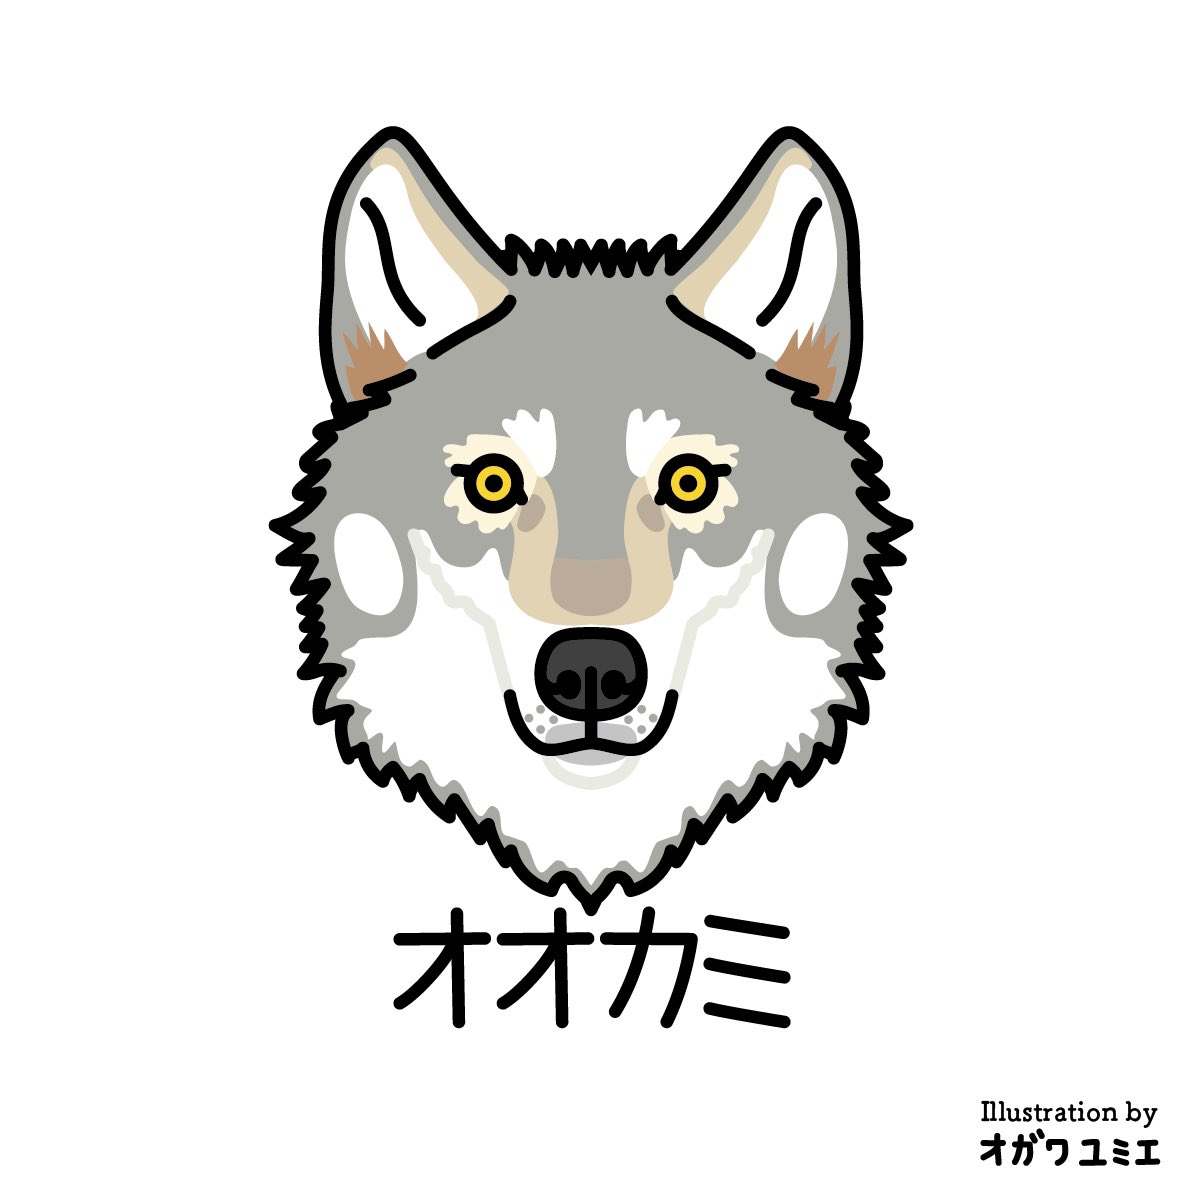 オオカミ

#yumieogawa #オガワユミエ #illustration #wolf  #canislupus #オオカミ